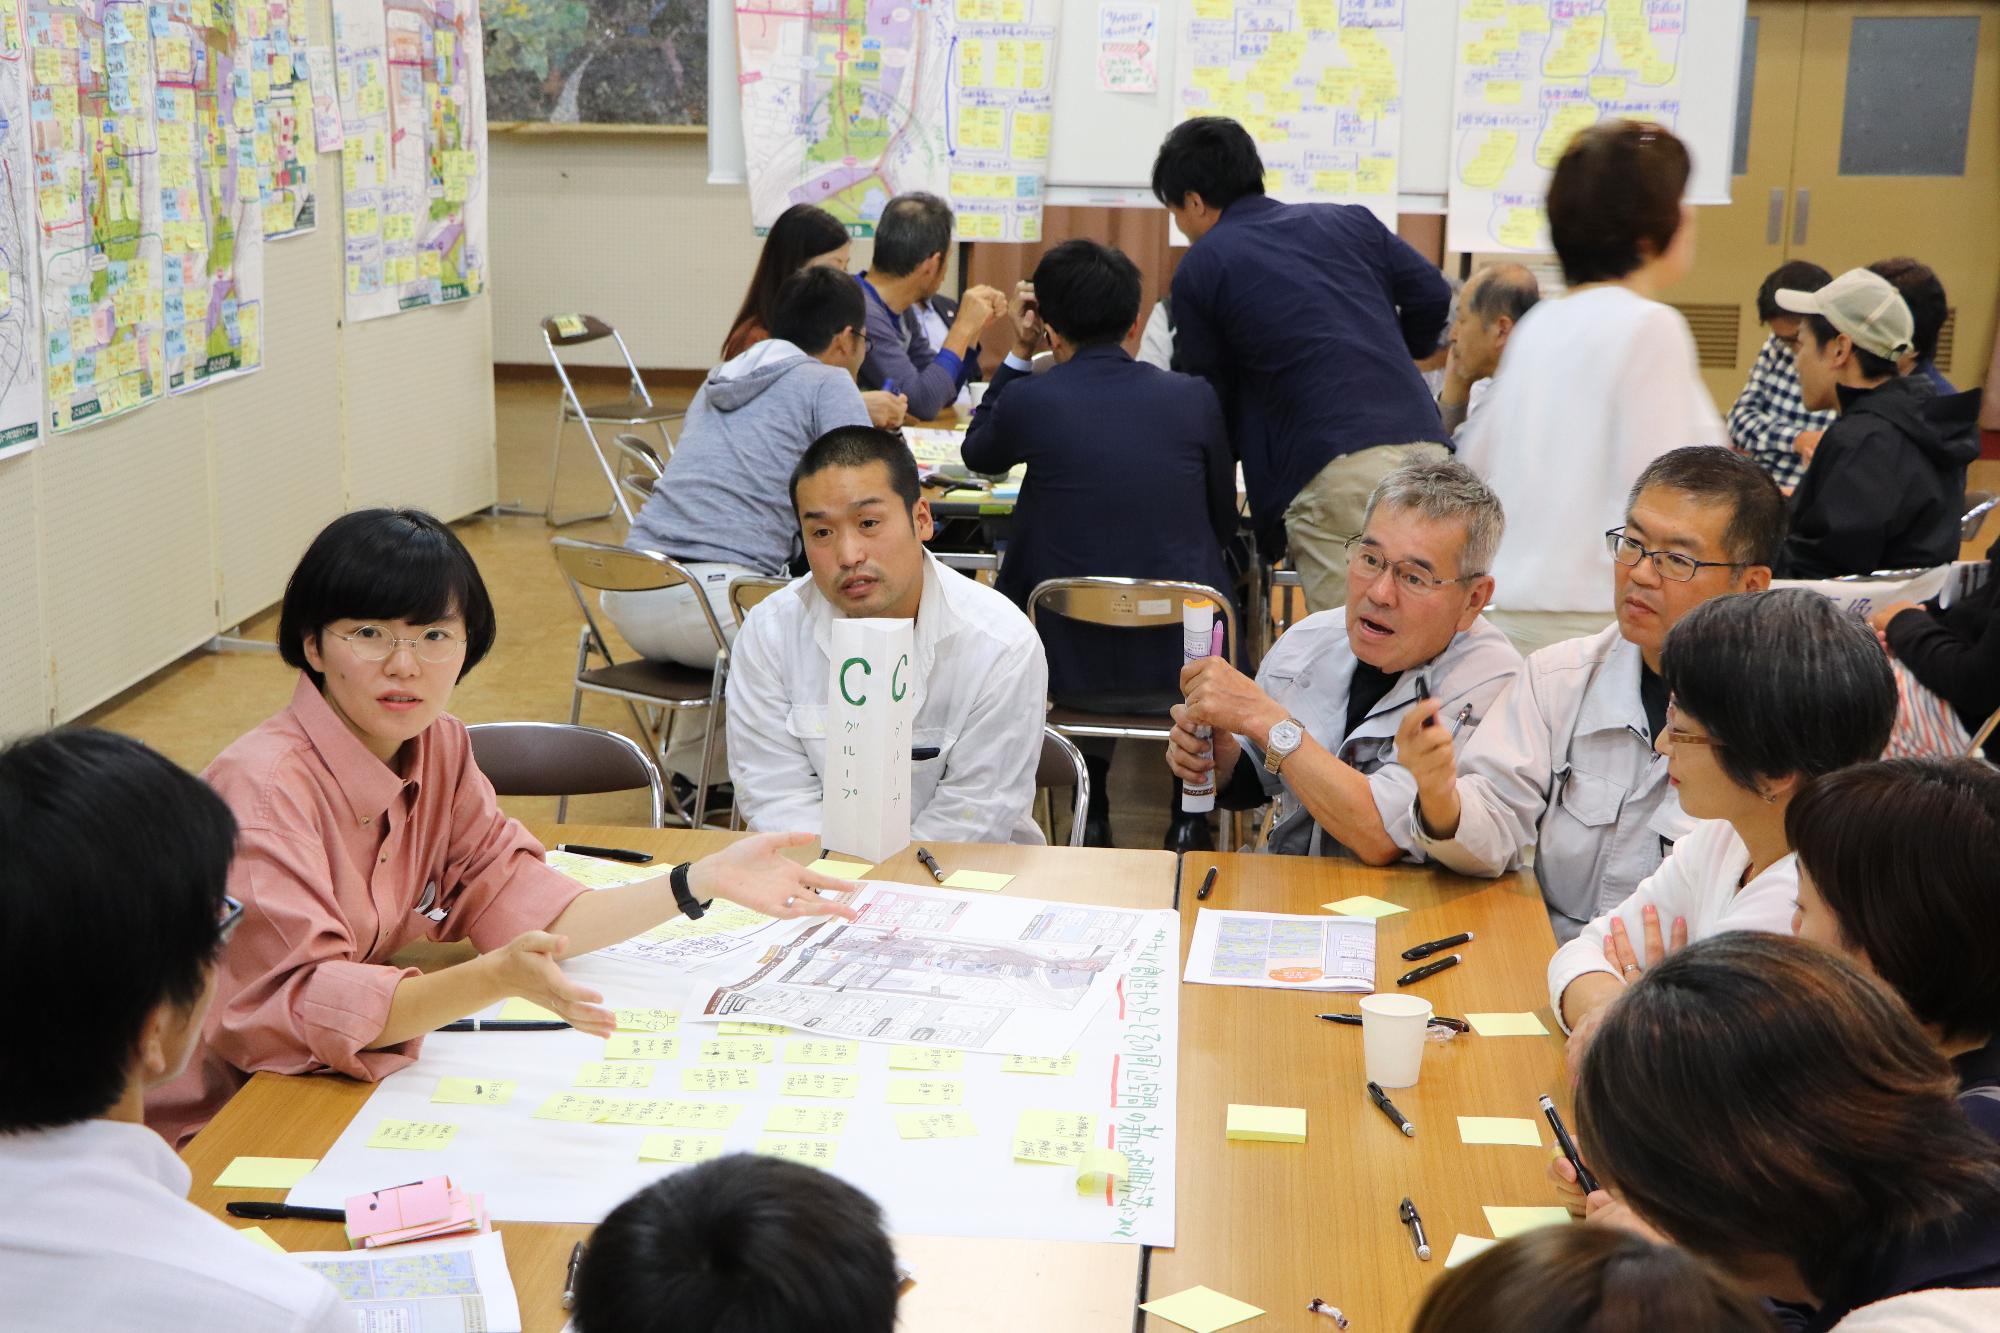 波賀文化創造センターの新たな活用方法について議論するワークショップ参加者らの写真